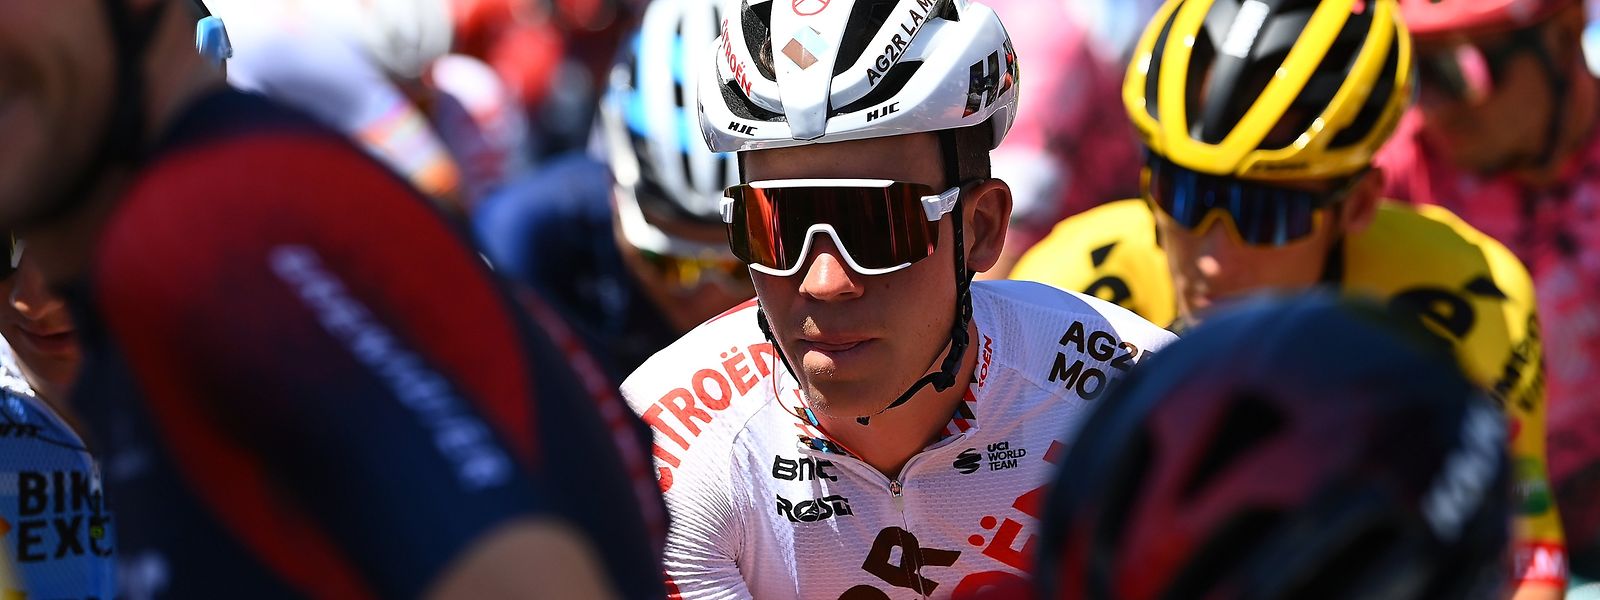 Bob Jungels pourra finalement participer au Tour de France après un deuxième test PCR négatif.